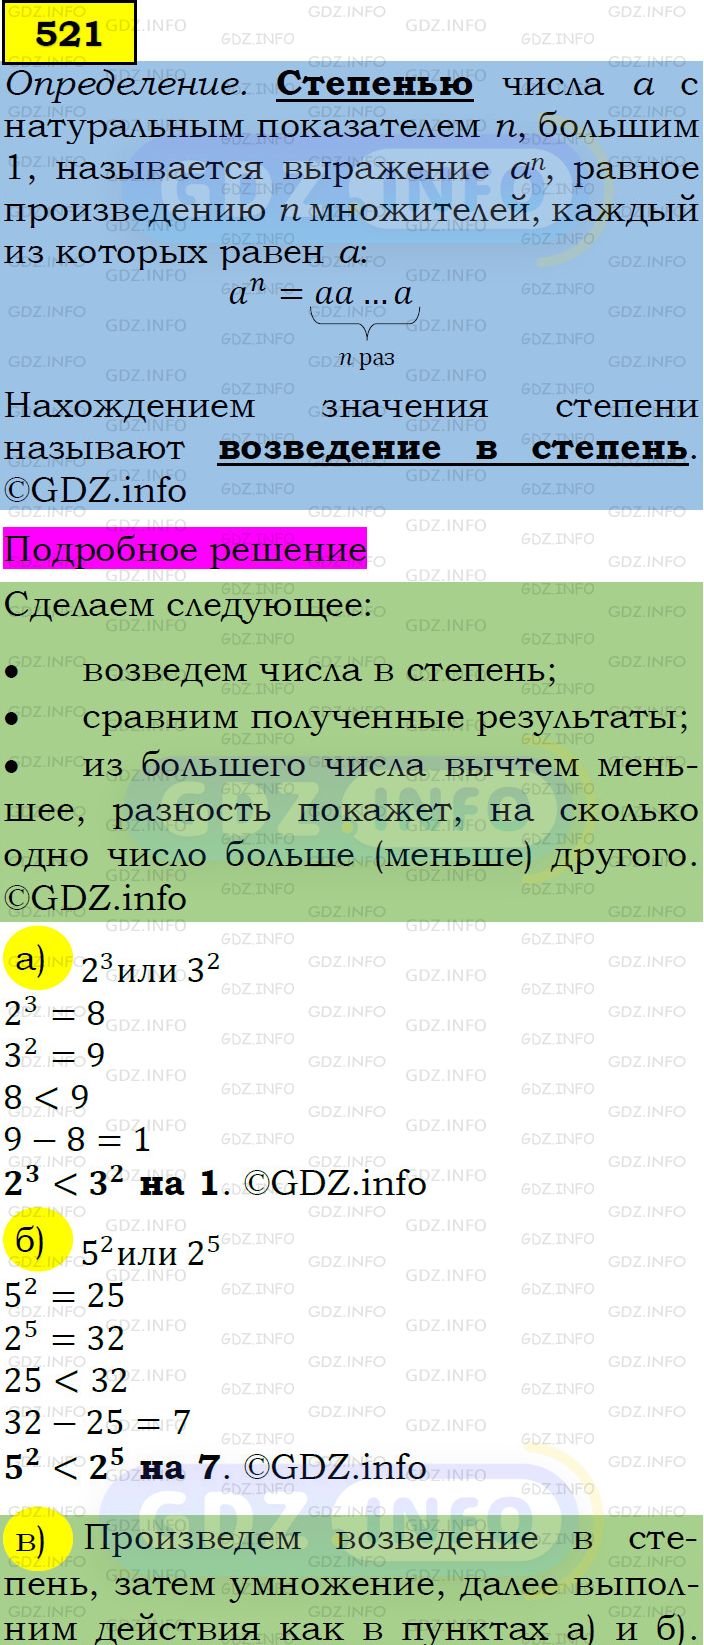 Фото подробного решения: Номер задания №521 из ГДЗ по Алгебре 7 класс: Макарычев Ю.Н.